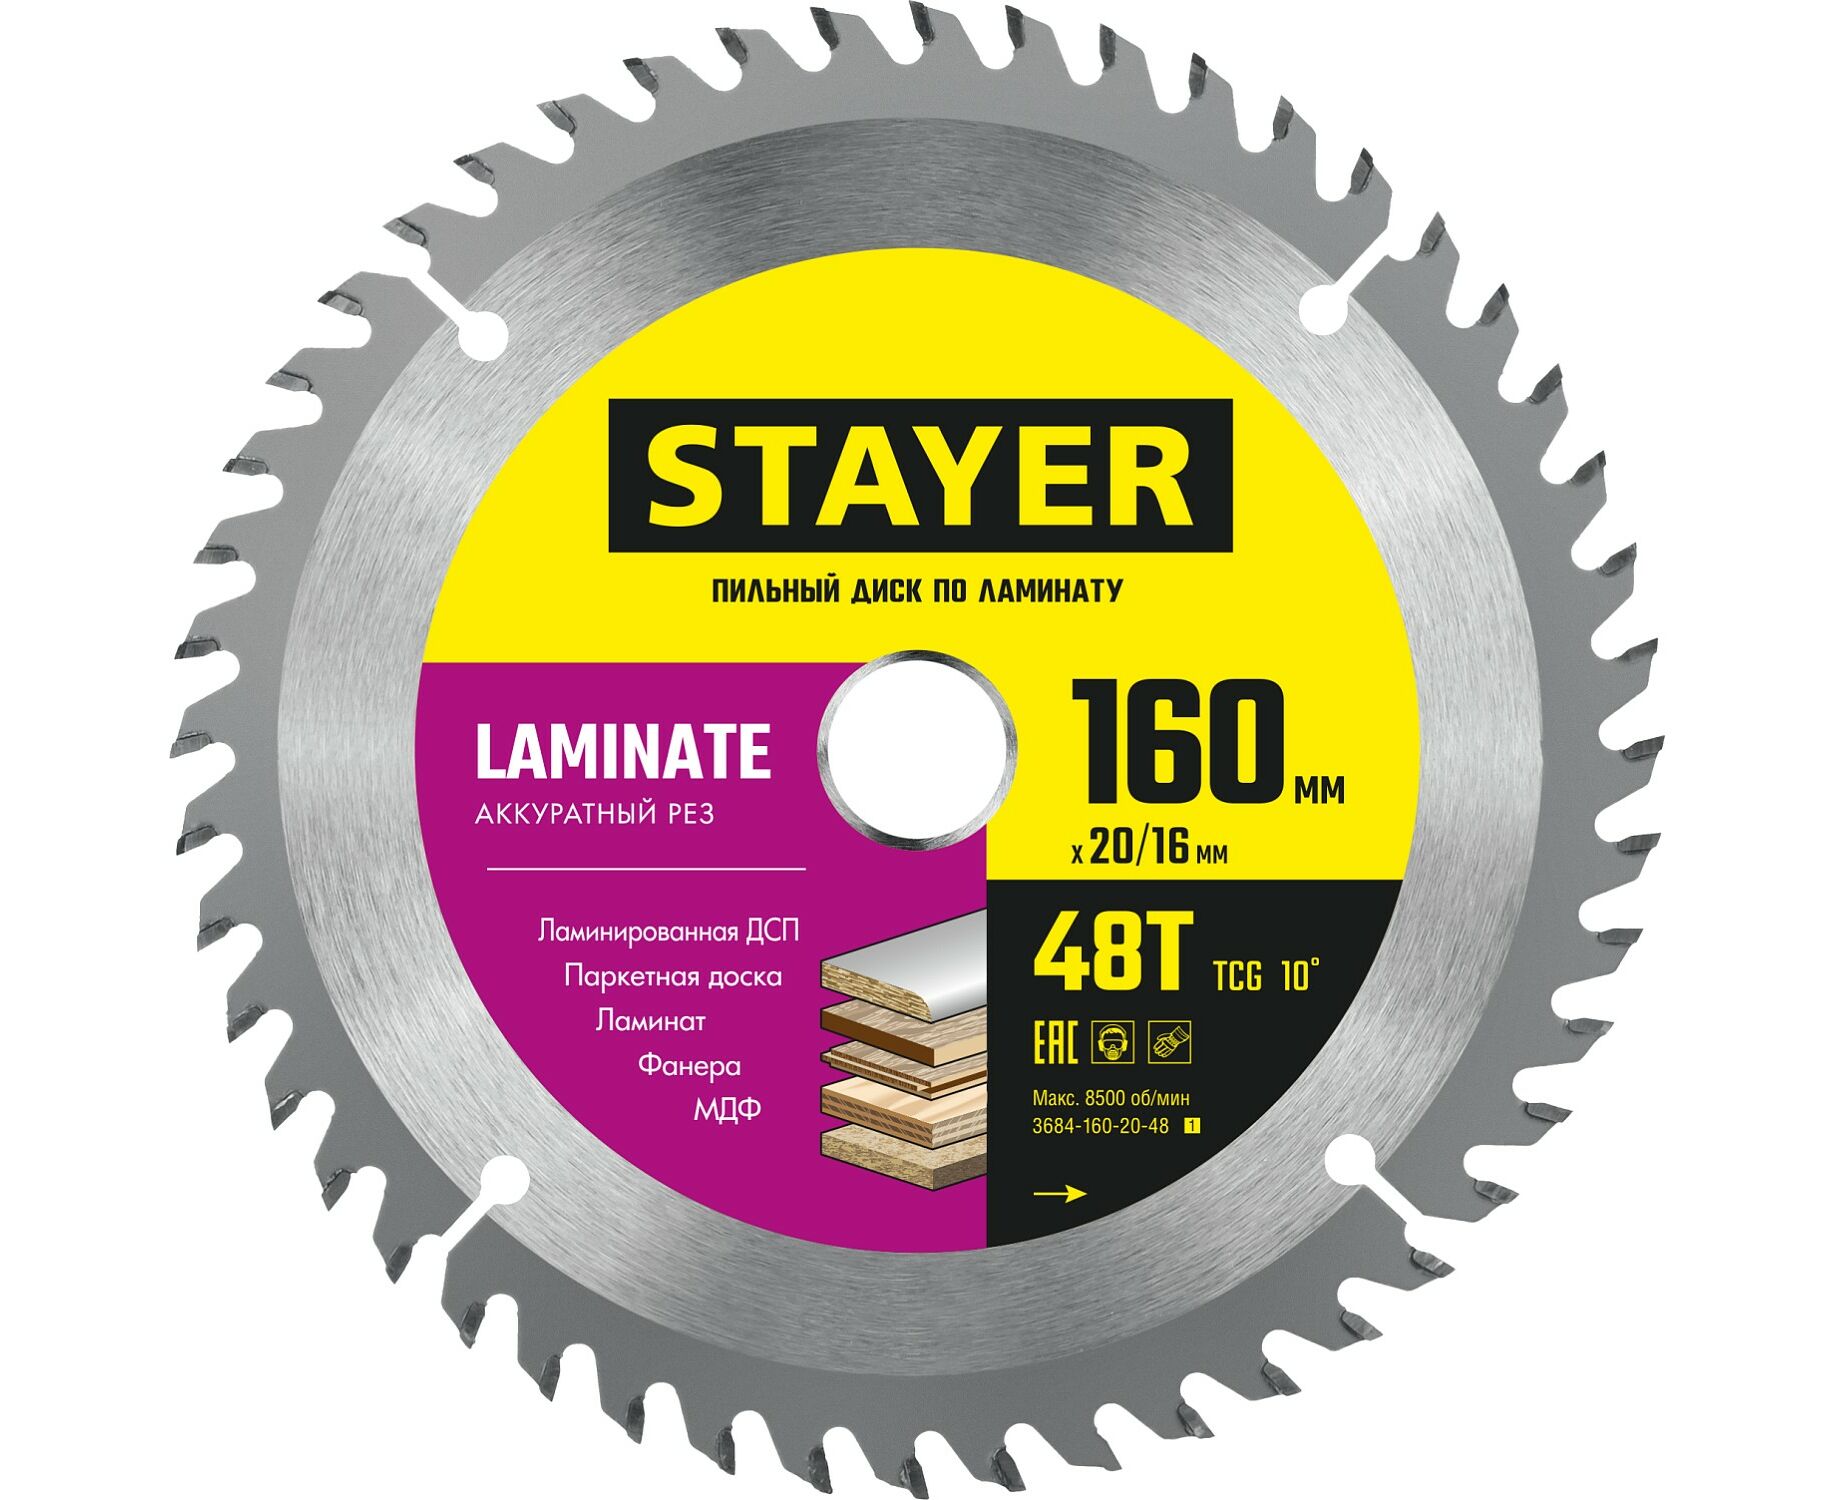 Пильный диск STAYER LAMINATE 160 x 20/16мм 48T, по ламинату, аккуратный рез